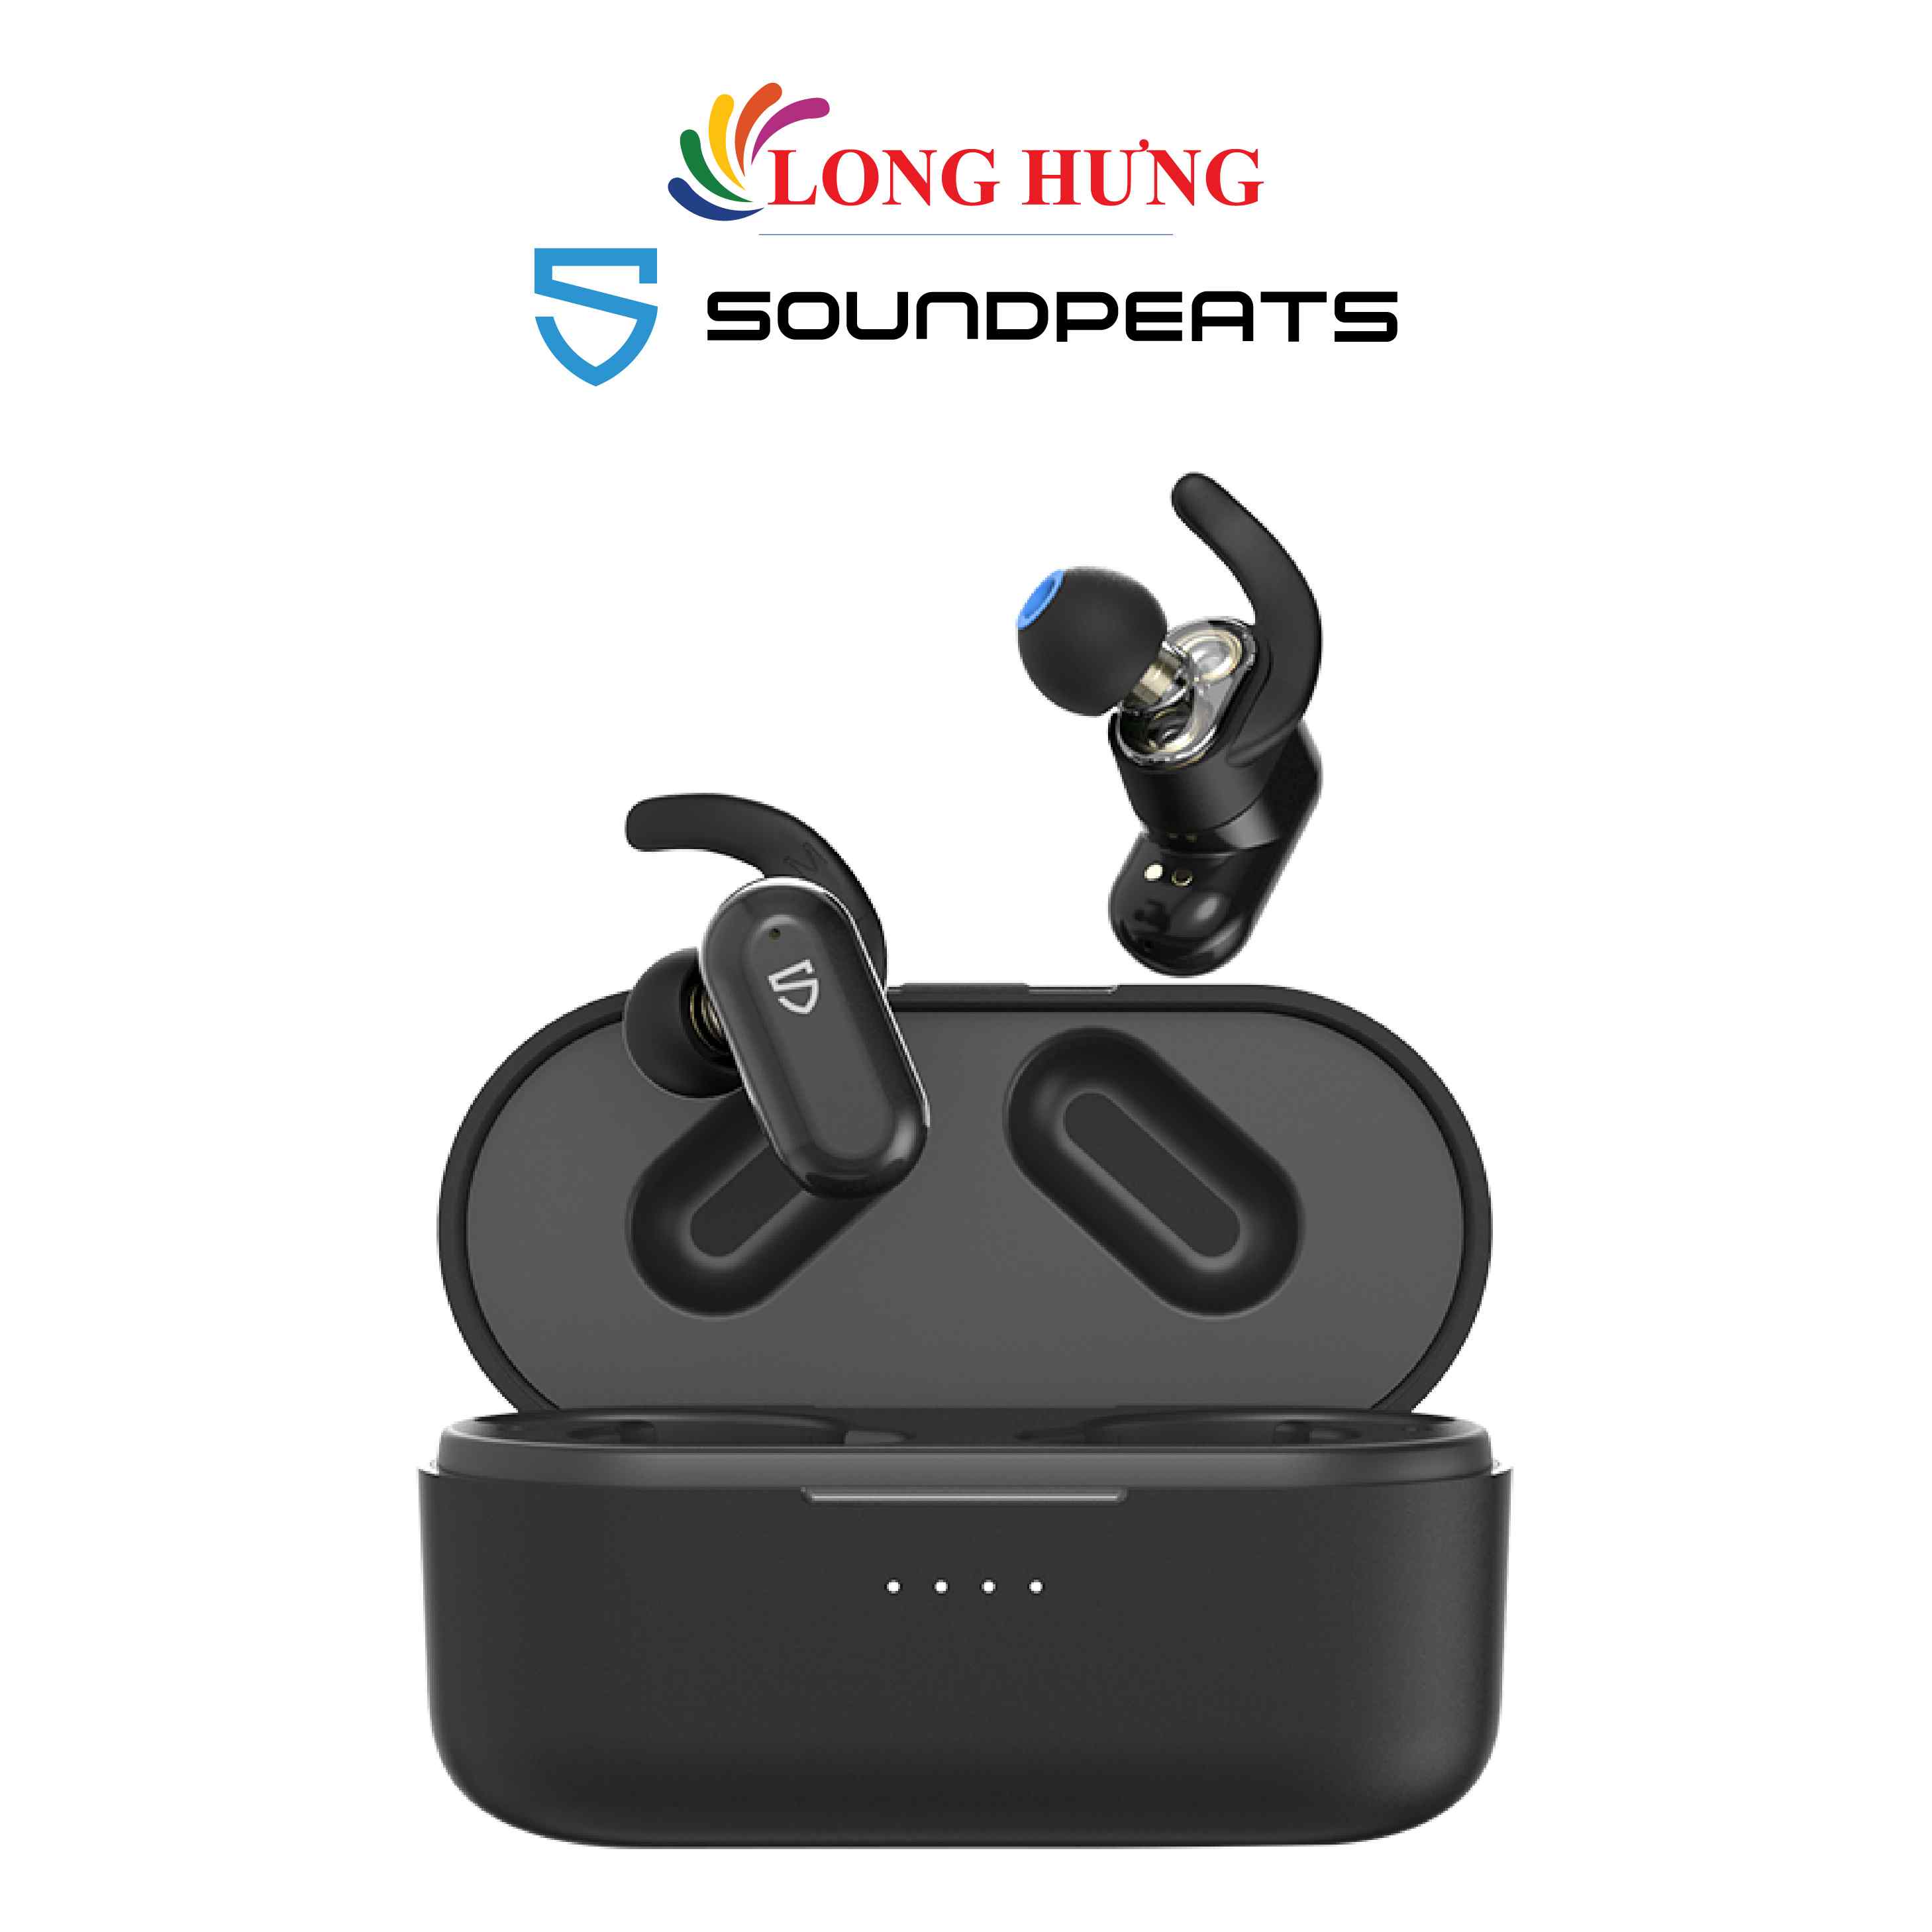 Tai nghe Bluetooth True Wireless Soundpeats Truengine2 - Hàng chính hãng - Thiết kế trẻ trung, âm thanh chất lượng, kết nối Bluetooth 5.0